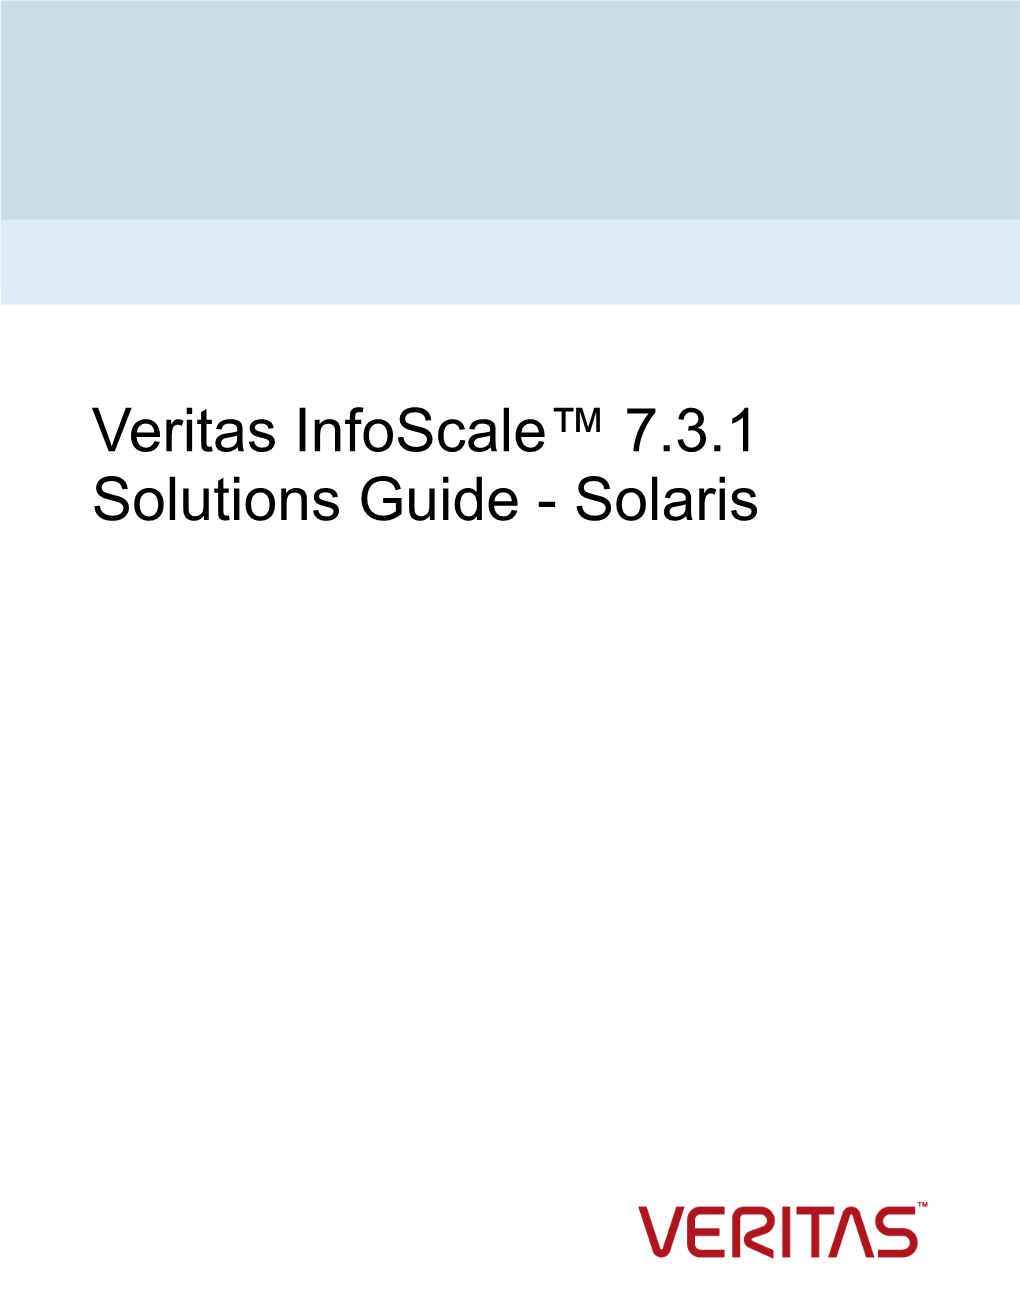 Solaris Last Updated: 2019-07-18 Legal Notice Copyright © 2018 Veritas Technologies LLC